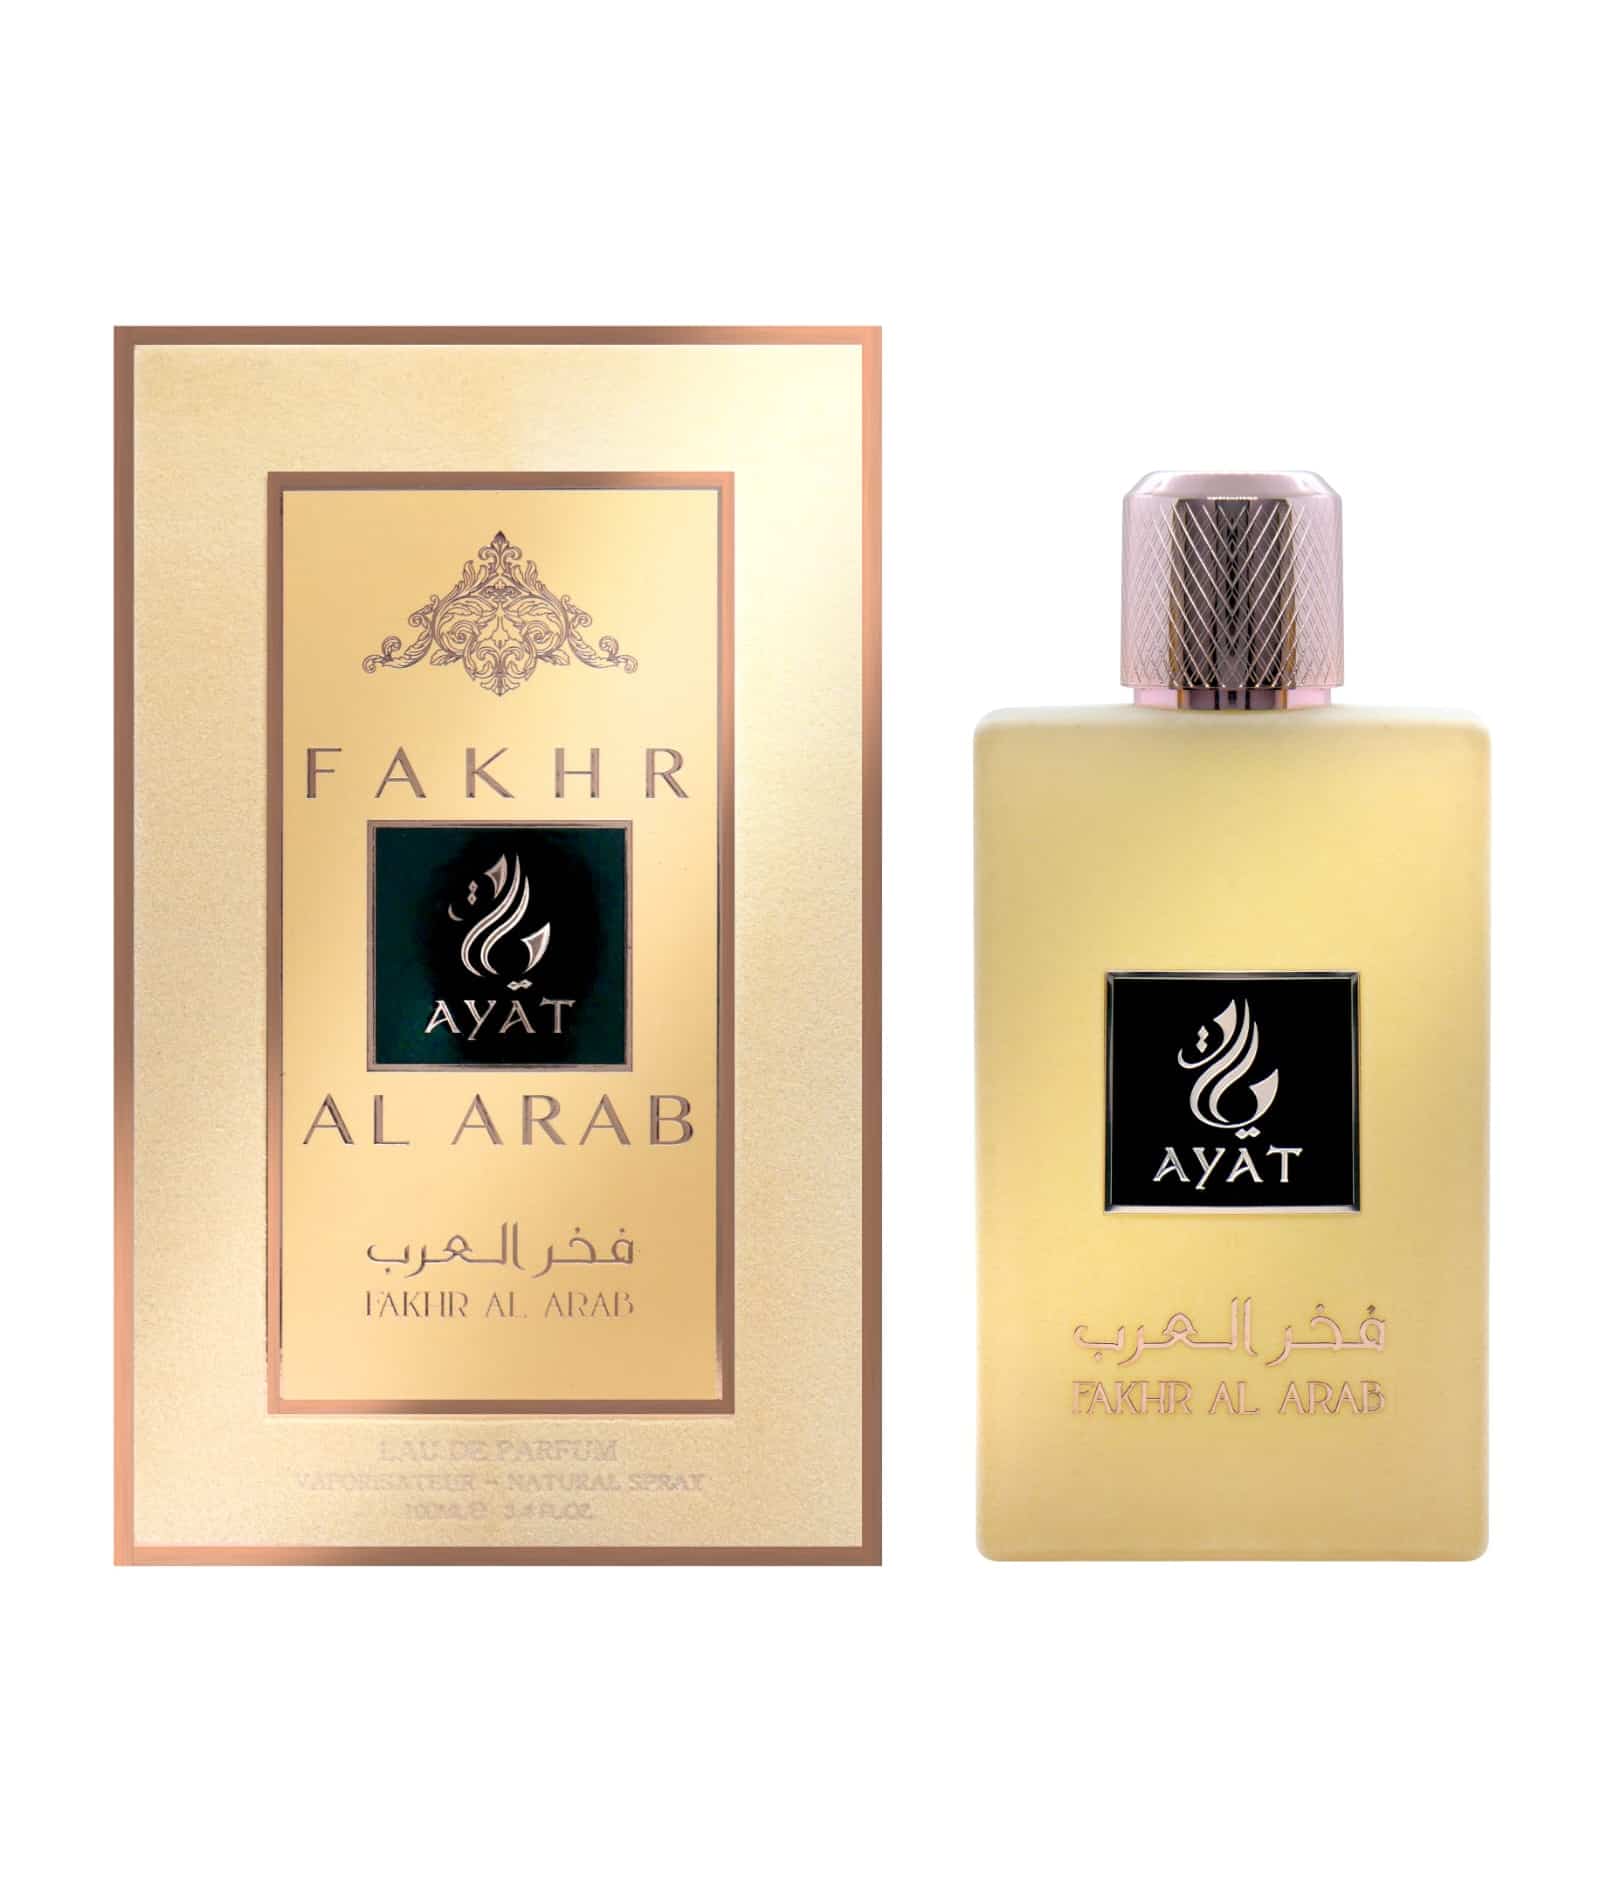 Fakhar al arab velvet perfume